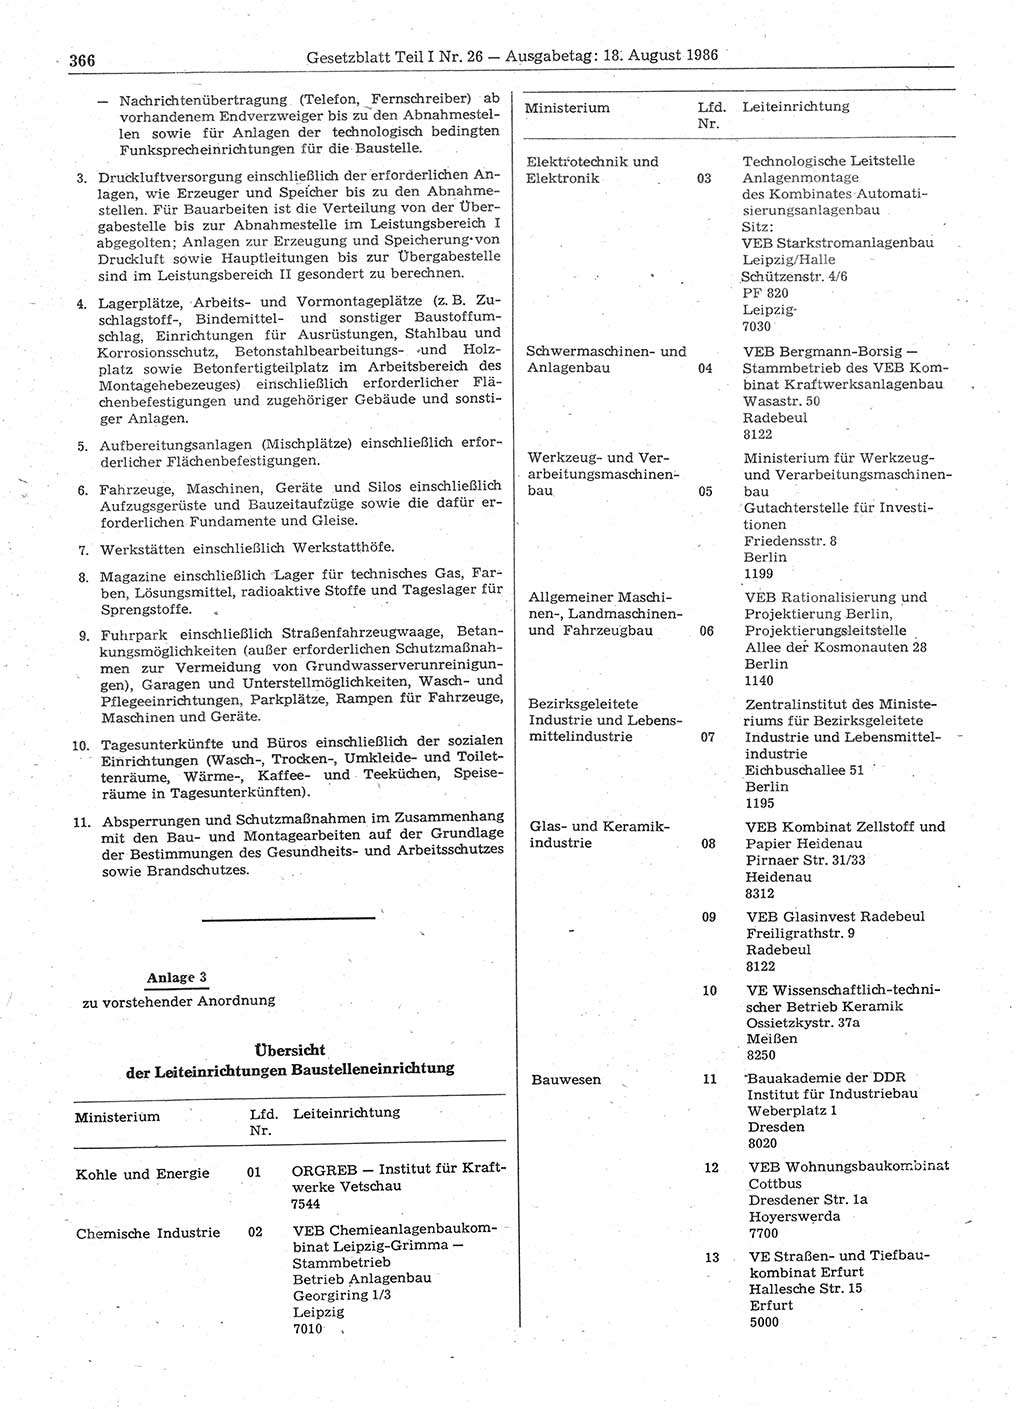 Gesetzblatt (GBl.) der Deutschen Demokratischen Republik (DDR) Teil Ⅰ 1986, Seite 366 (GBl. DDR Ⅰ 1986, S. 366)